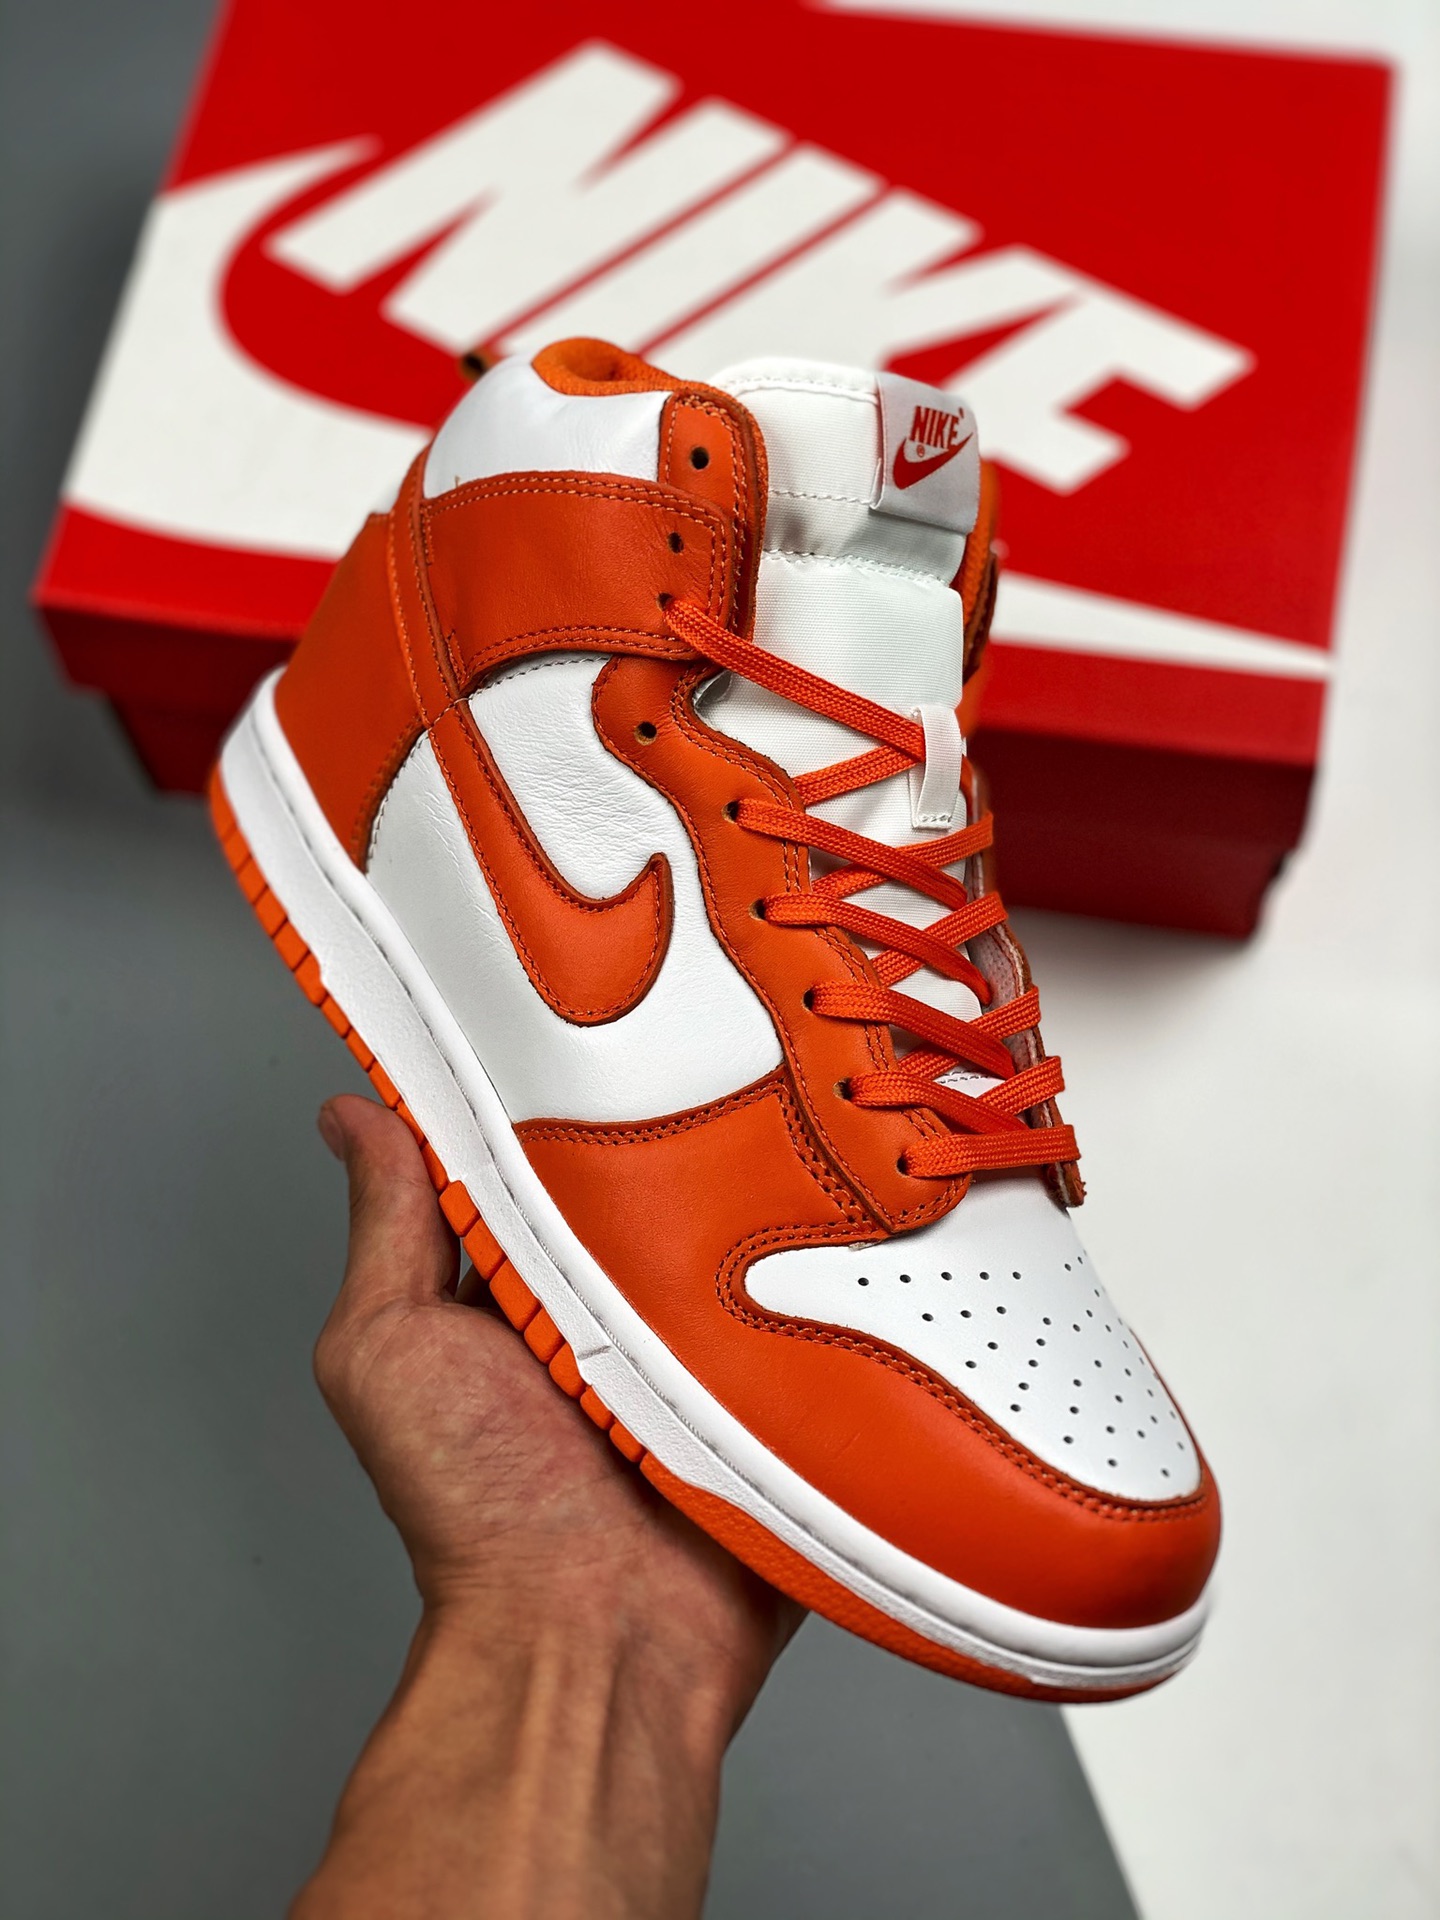 Nike Dunk High "Syracuse" White/Orange Blaze Shoes